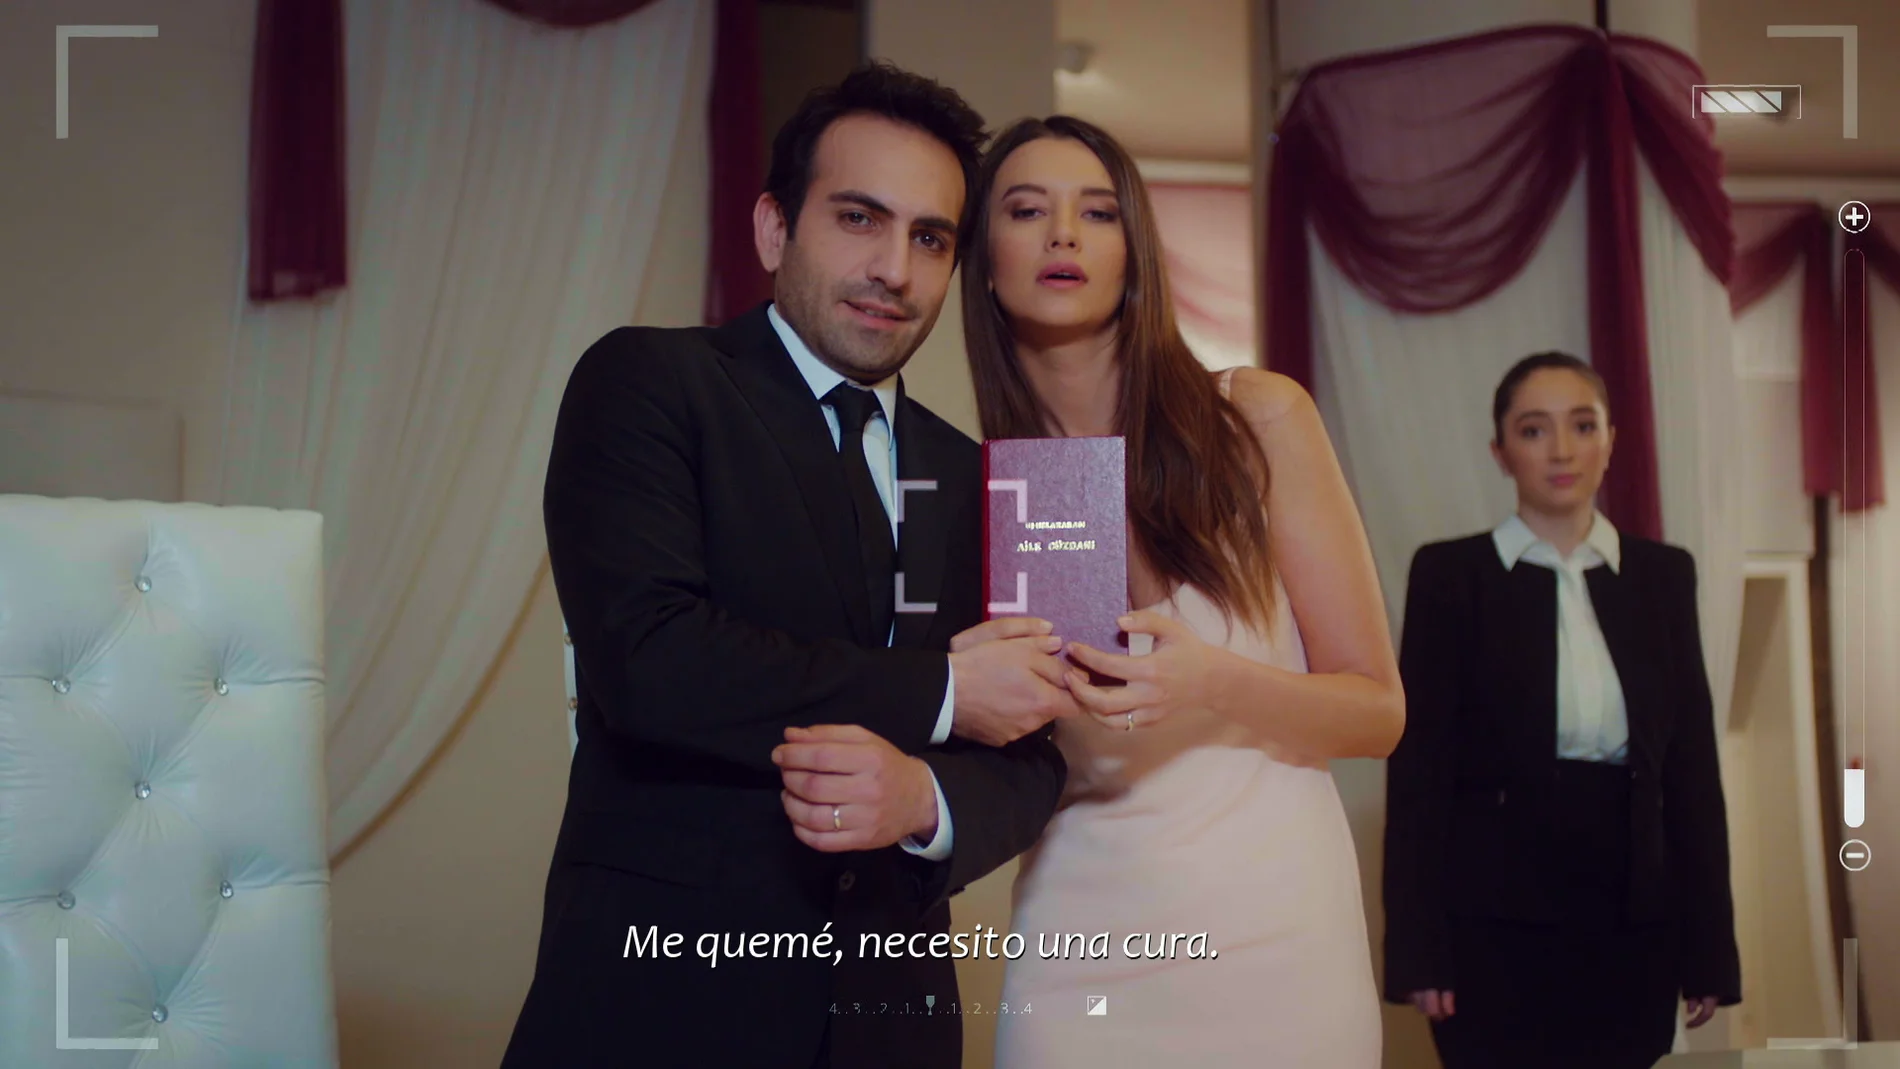 La boda de Candan y Demir: el sueño de Öykü se convierte en realidad